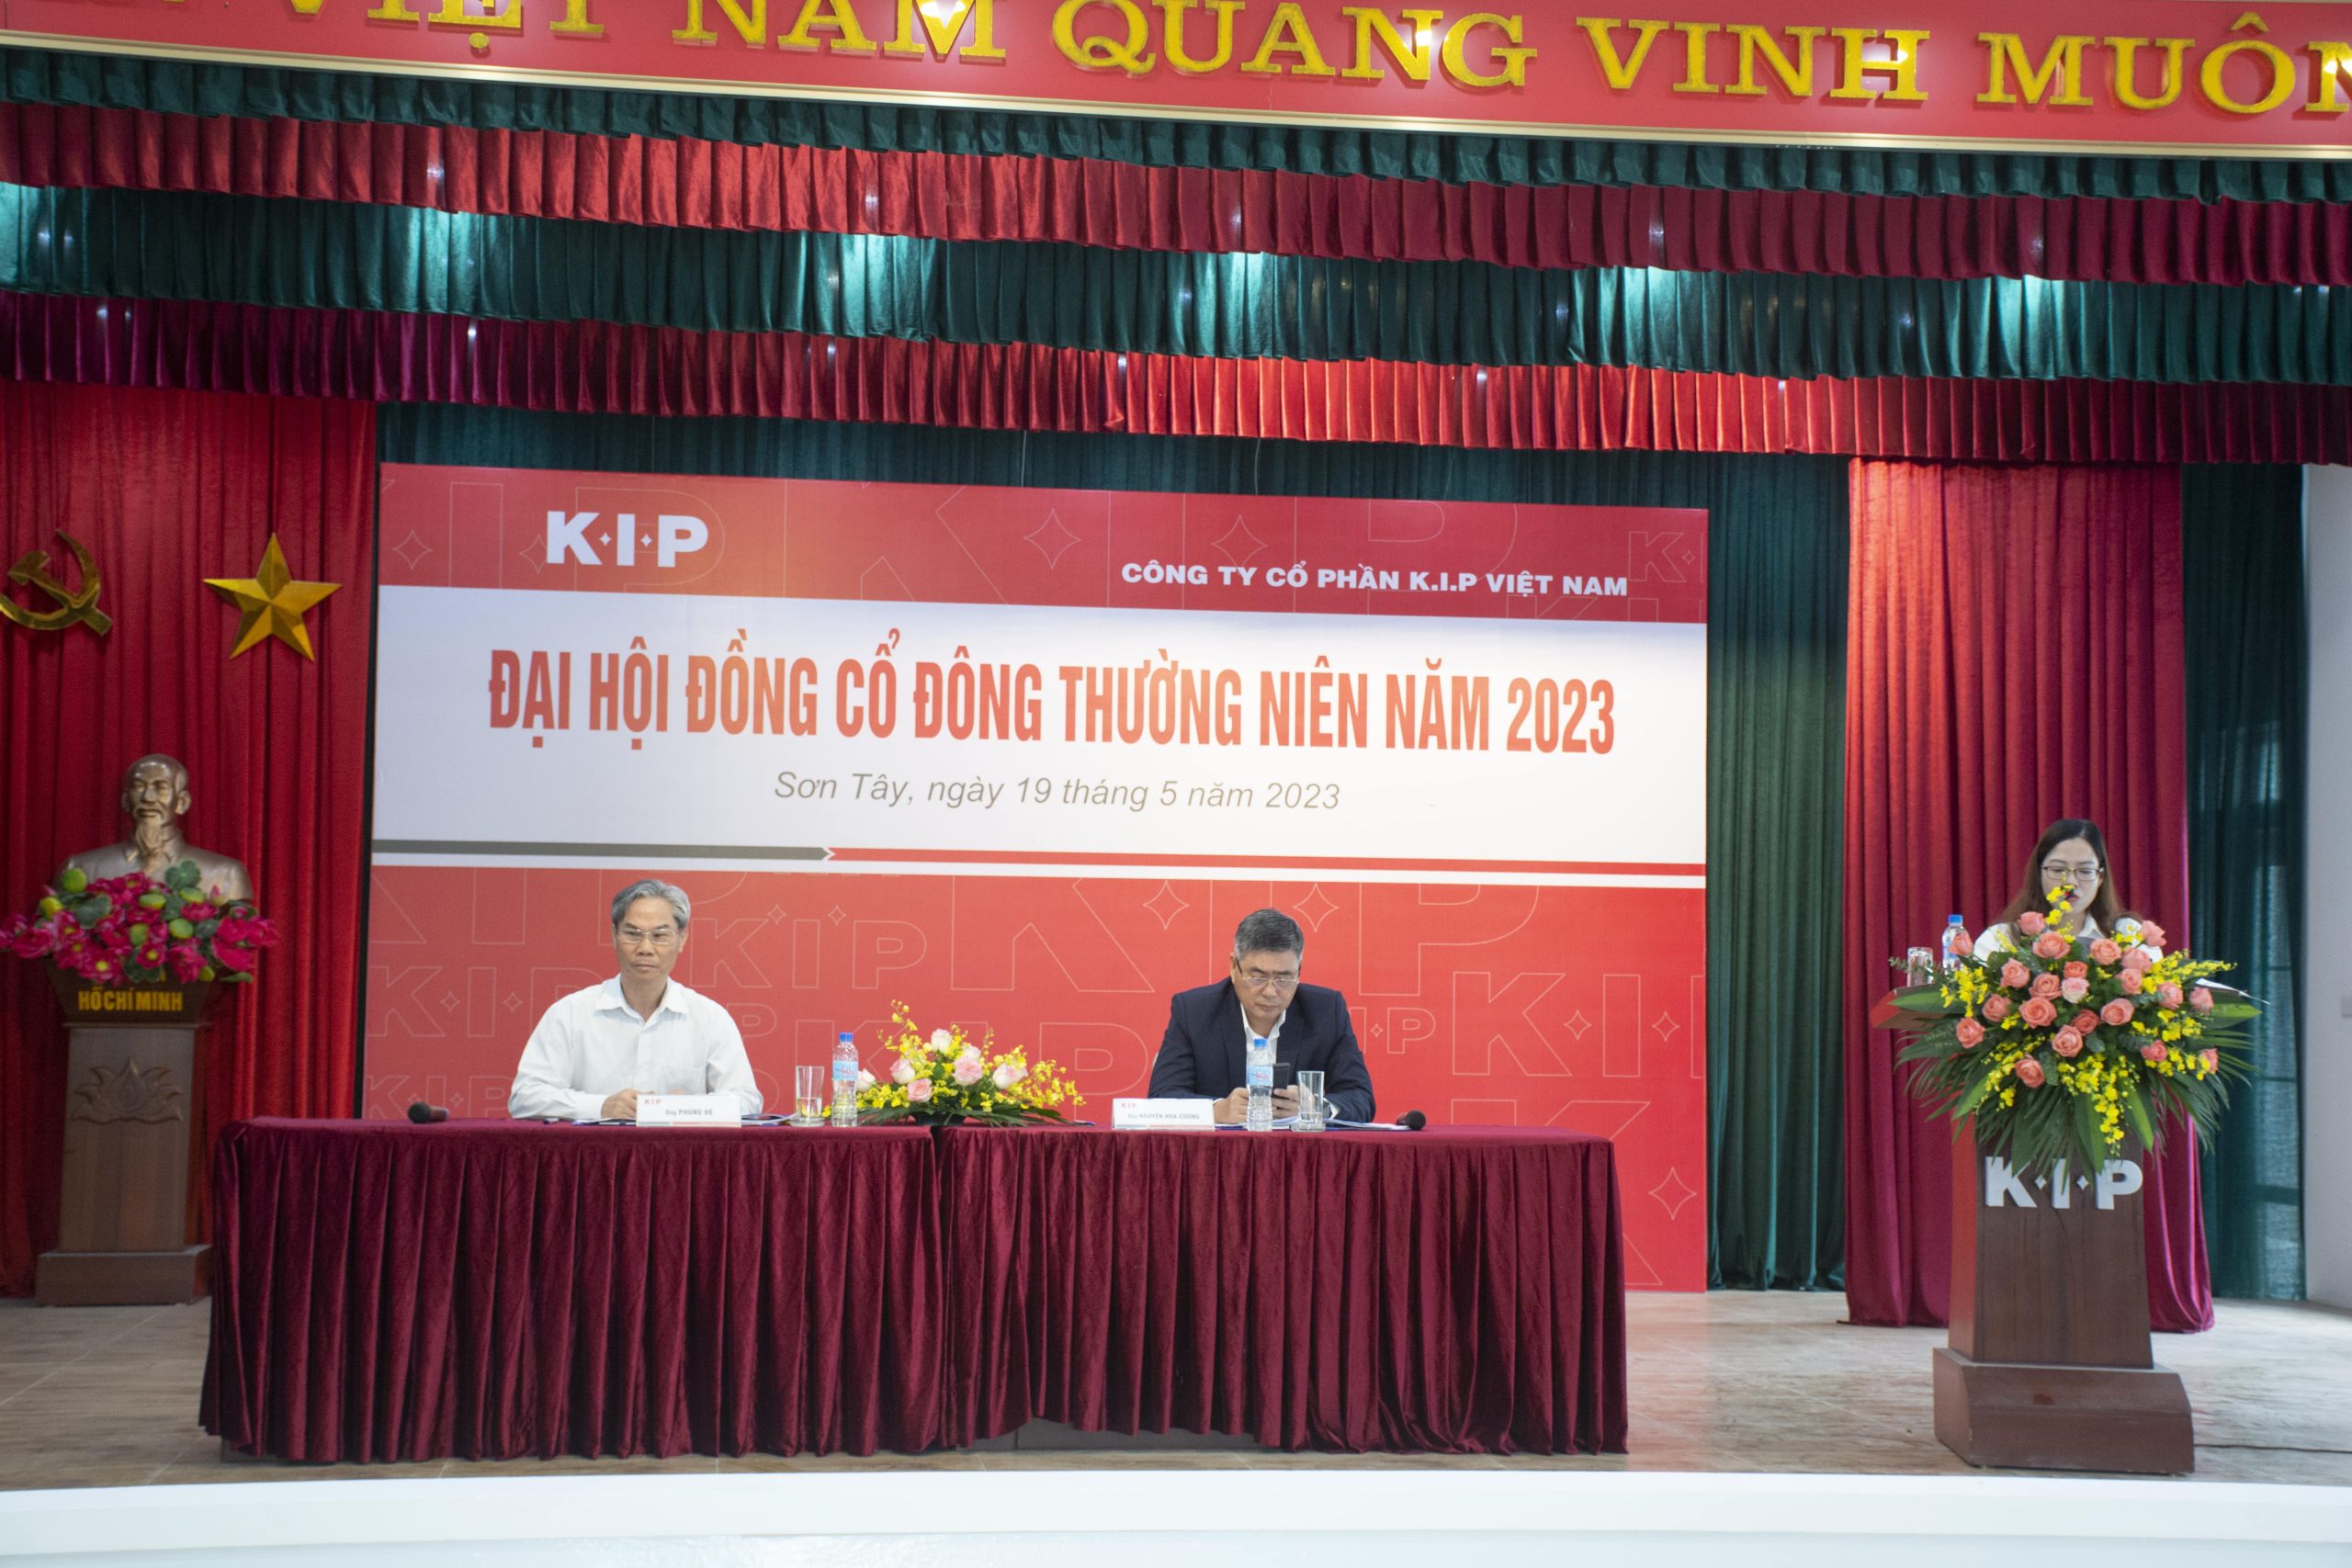 Đại hội đồng cổ đông thường niên năm 2023 tại K.I.P Việt Nam